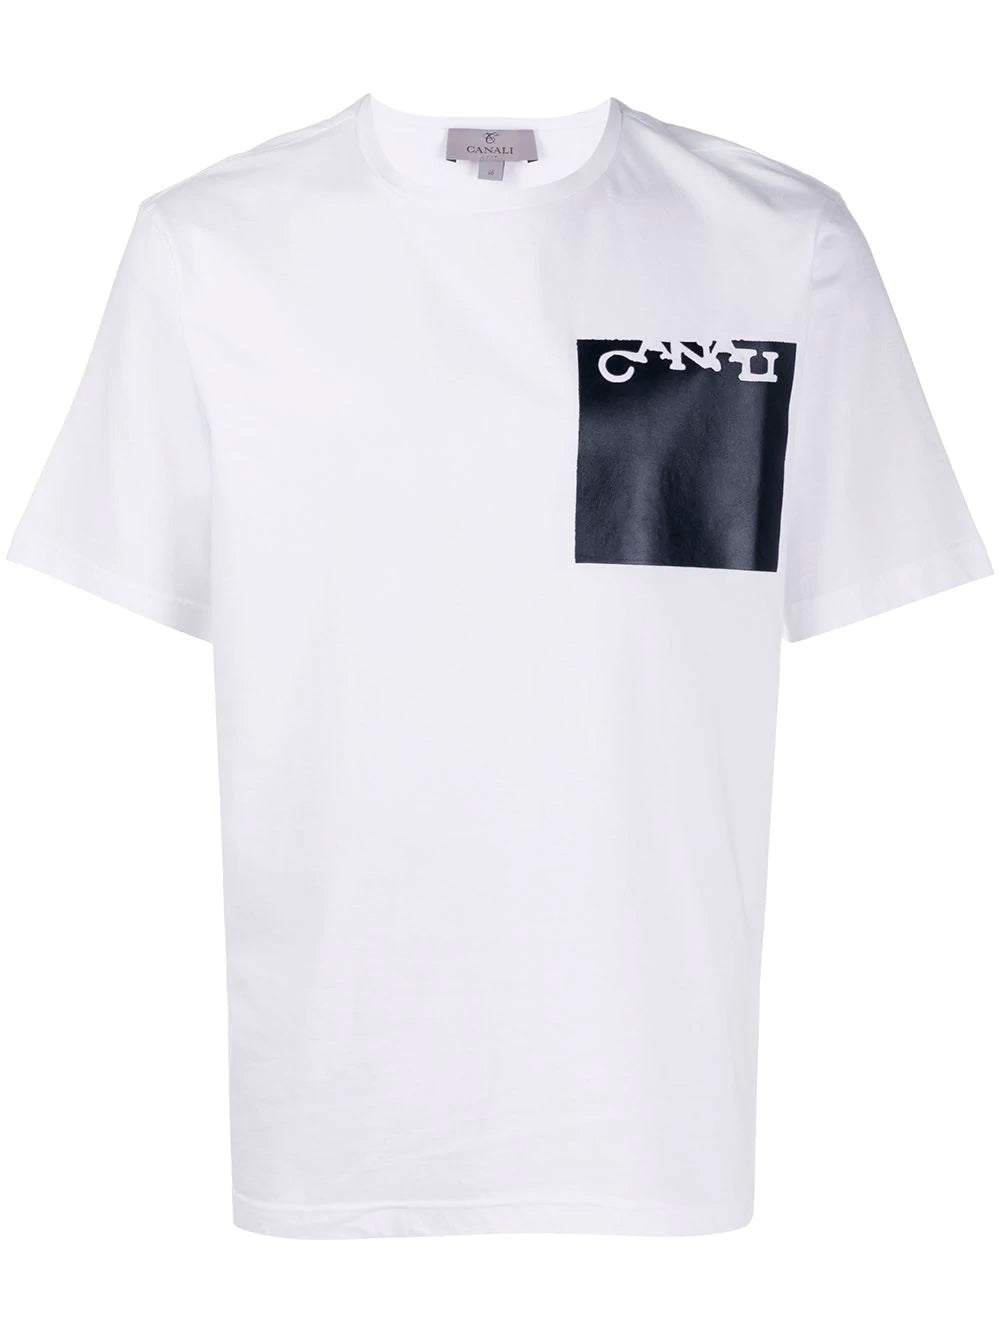 CANALI camiseta con logo texturizado